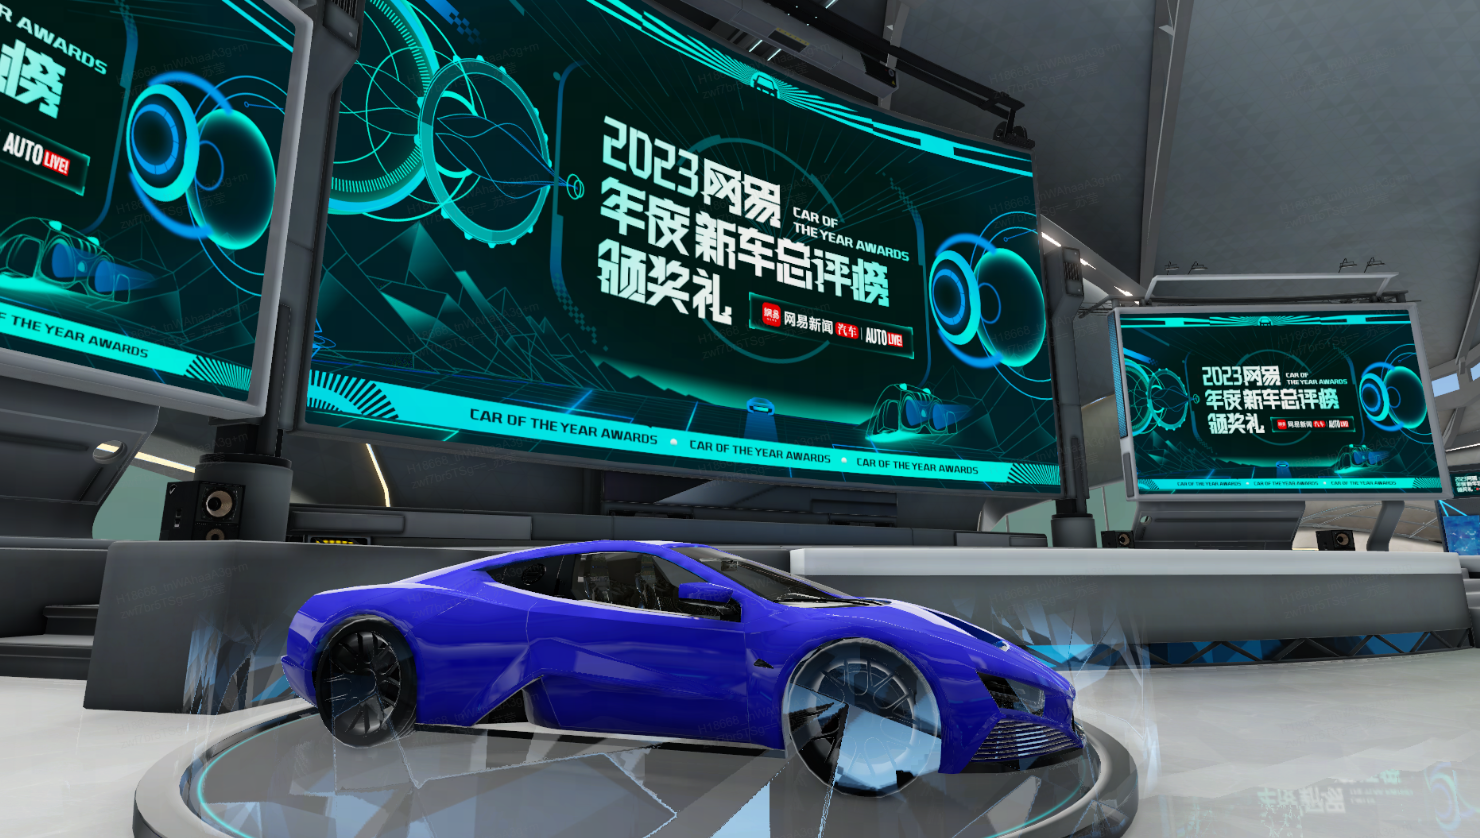 这是一张展示蓝色概念跑车的图片，背景有多个显示屏展示2023年车型信息，整体设计现代科技感十足。